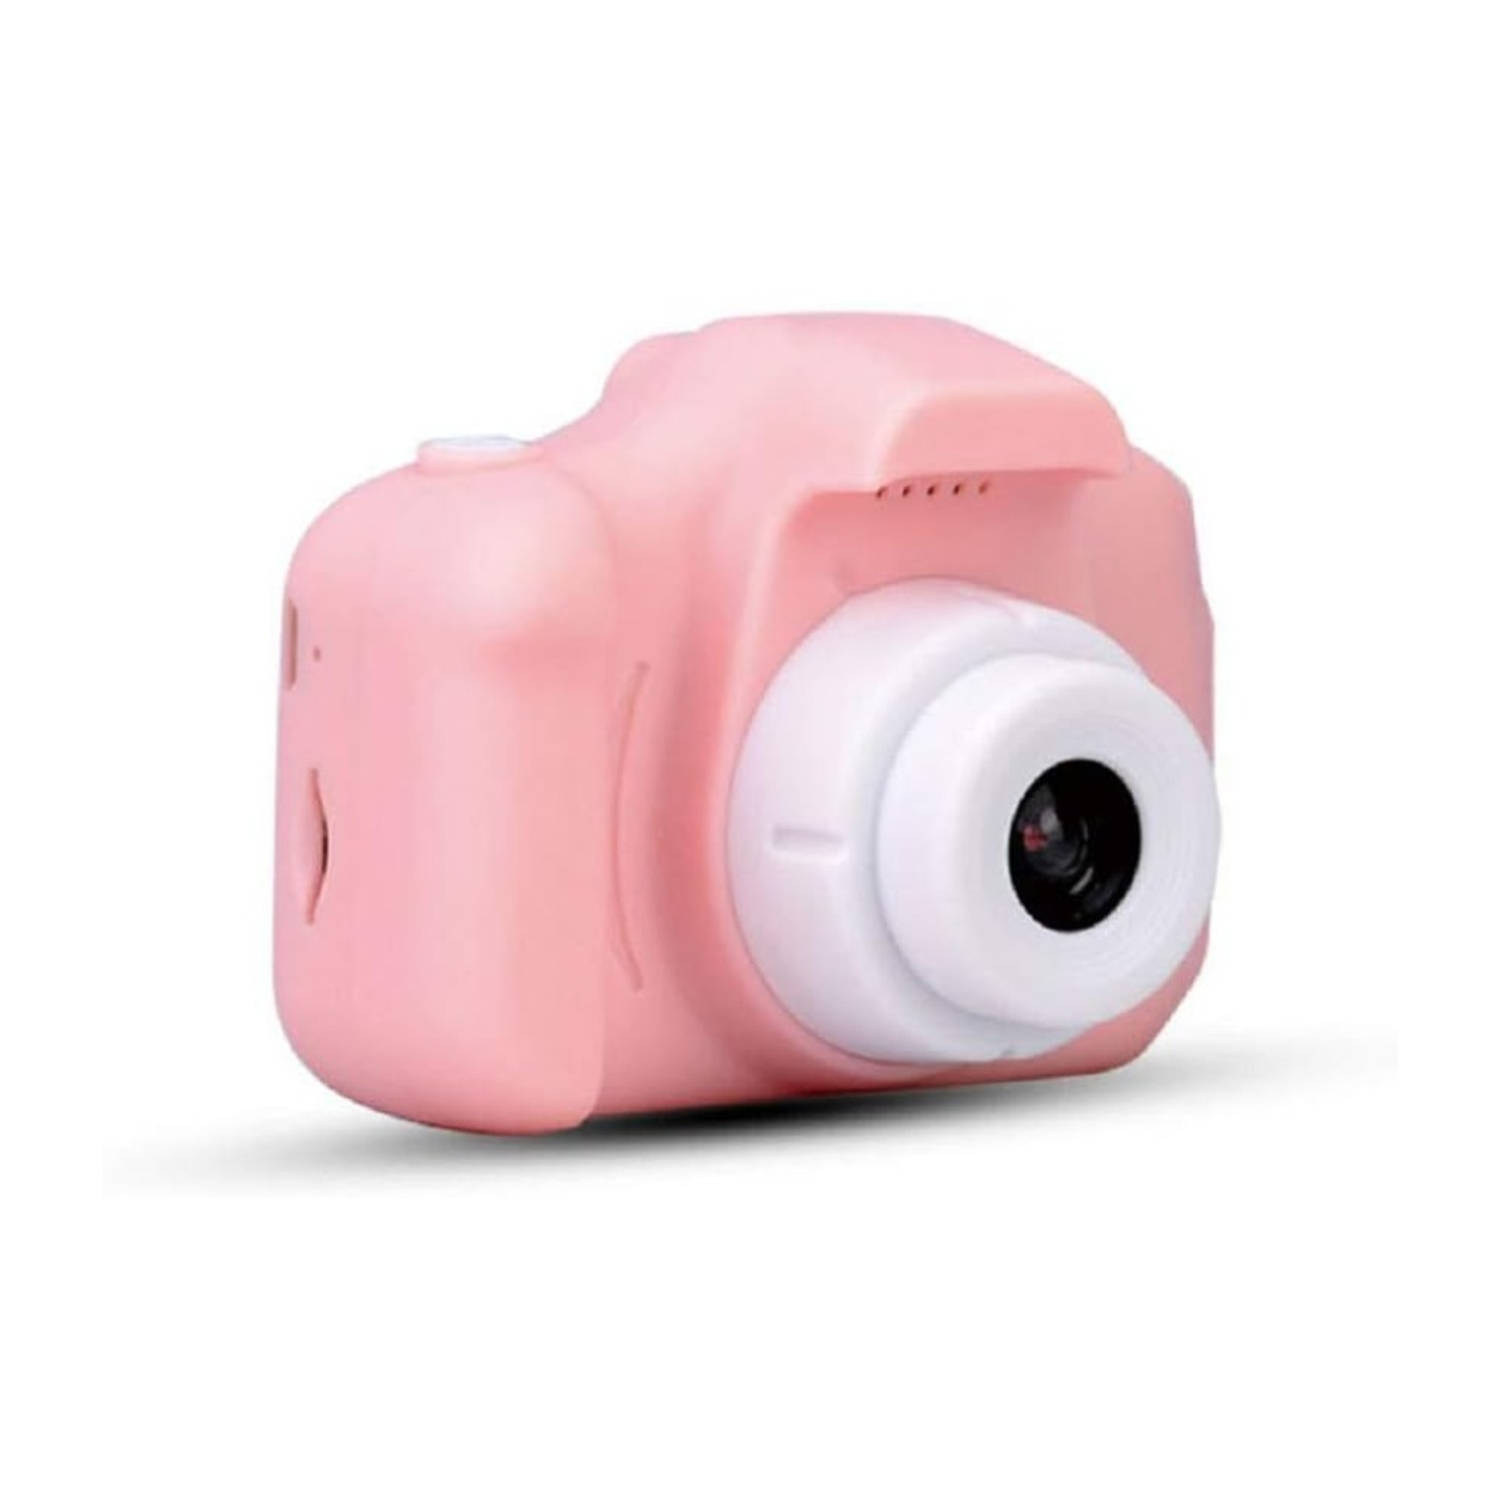 Homezie Kindercamera - Roze - 5 Ingebouwde spelletjes - 1080p - 3 Megapixel - USB oplaadbaar - Digitale camera - Fototoestel voor kinderen